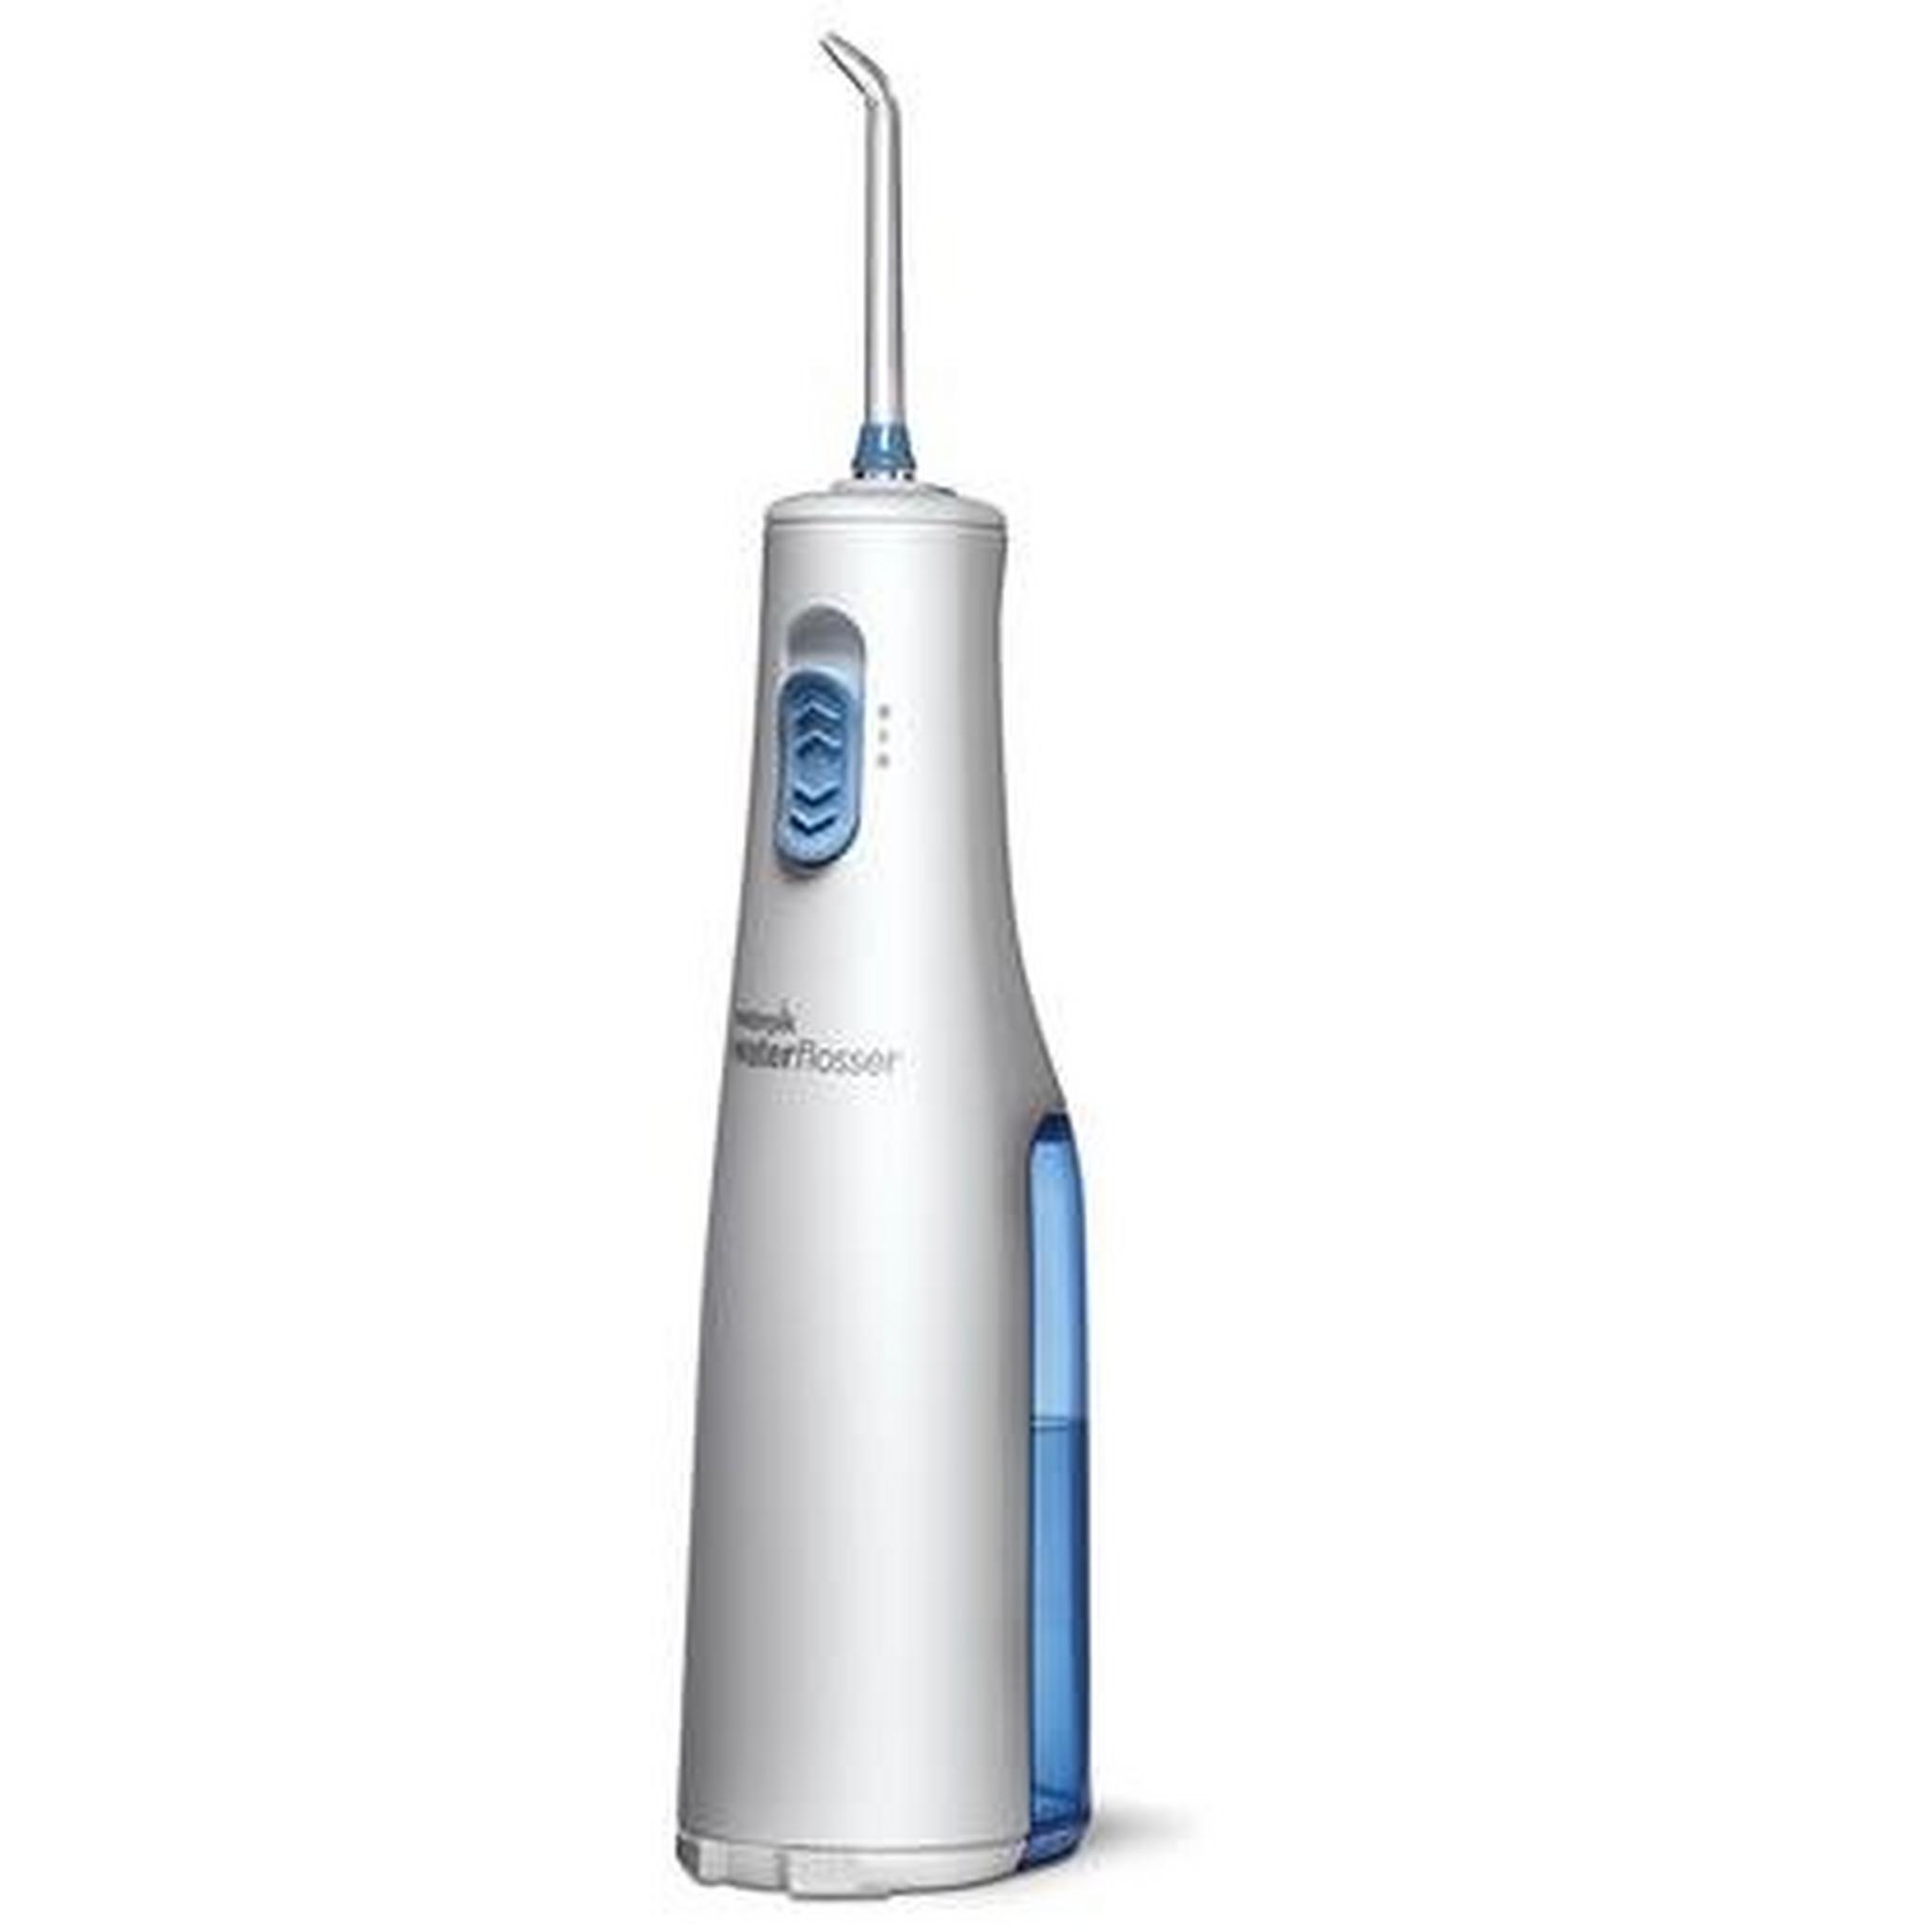 مضخة تنظيف الأسنان اللاسلكية ووتر بيك - بطارية اى اى (WF-02ME011)